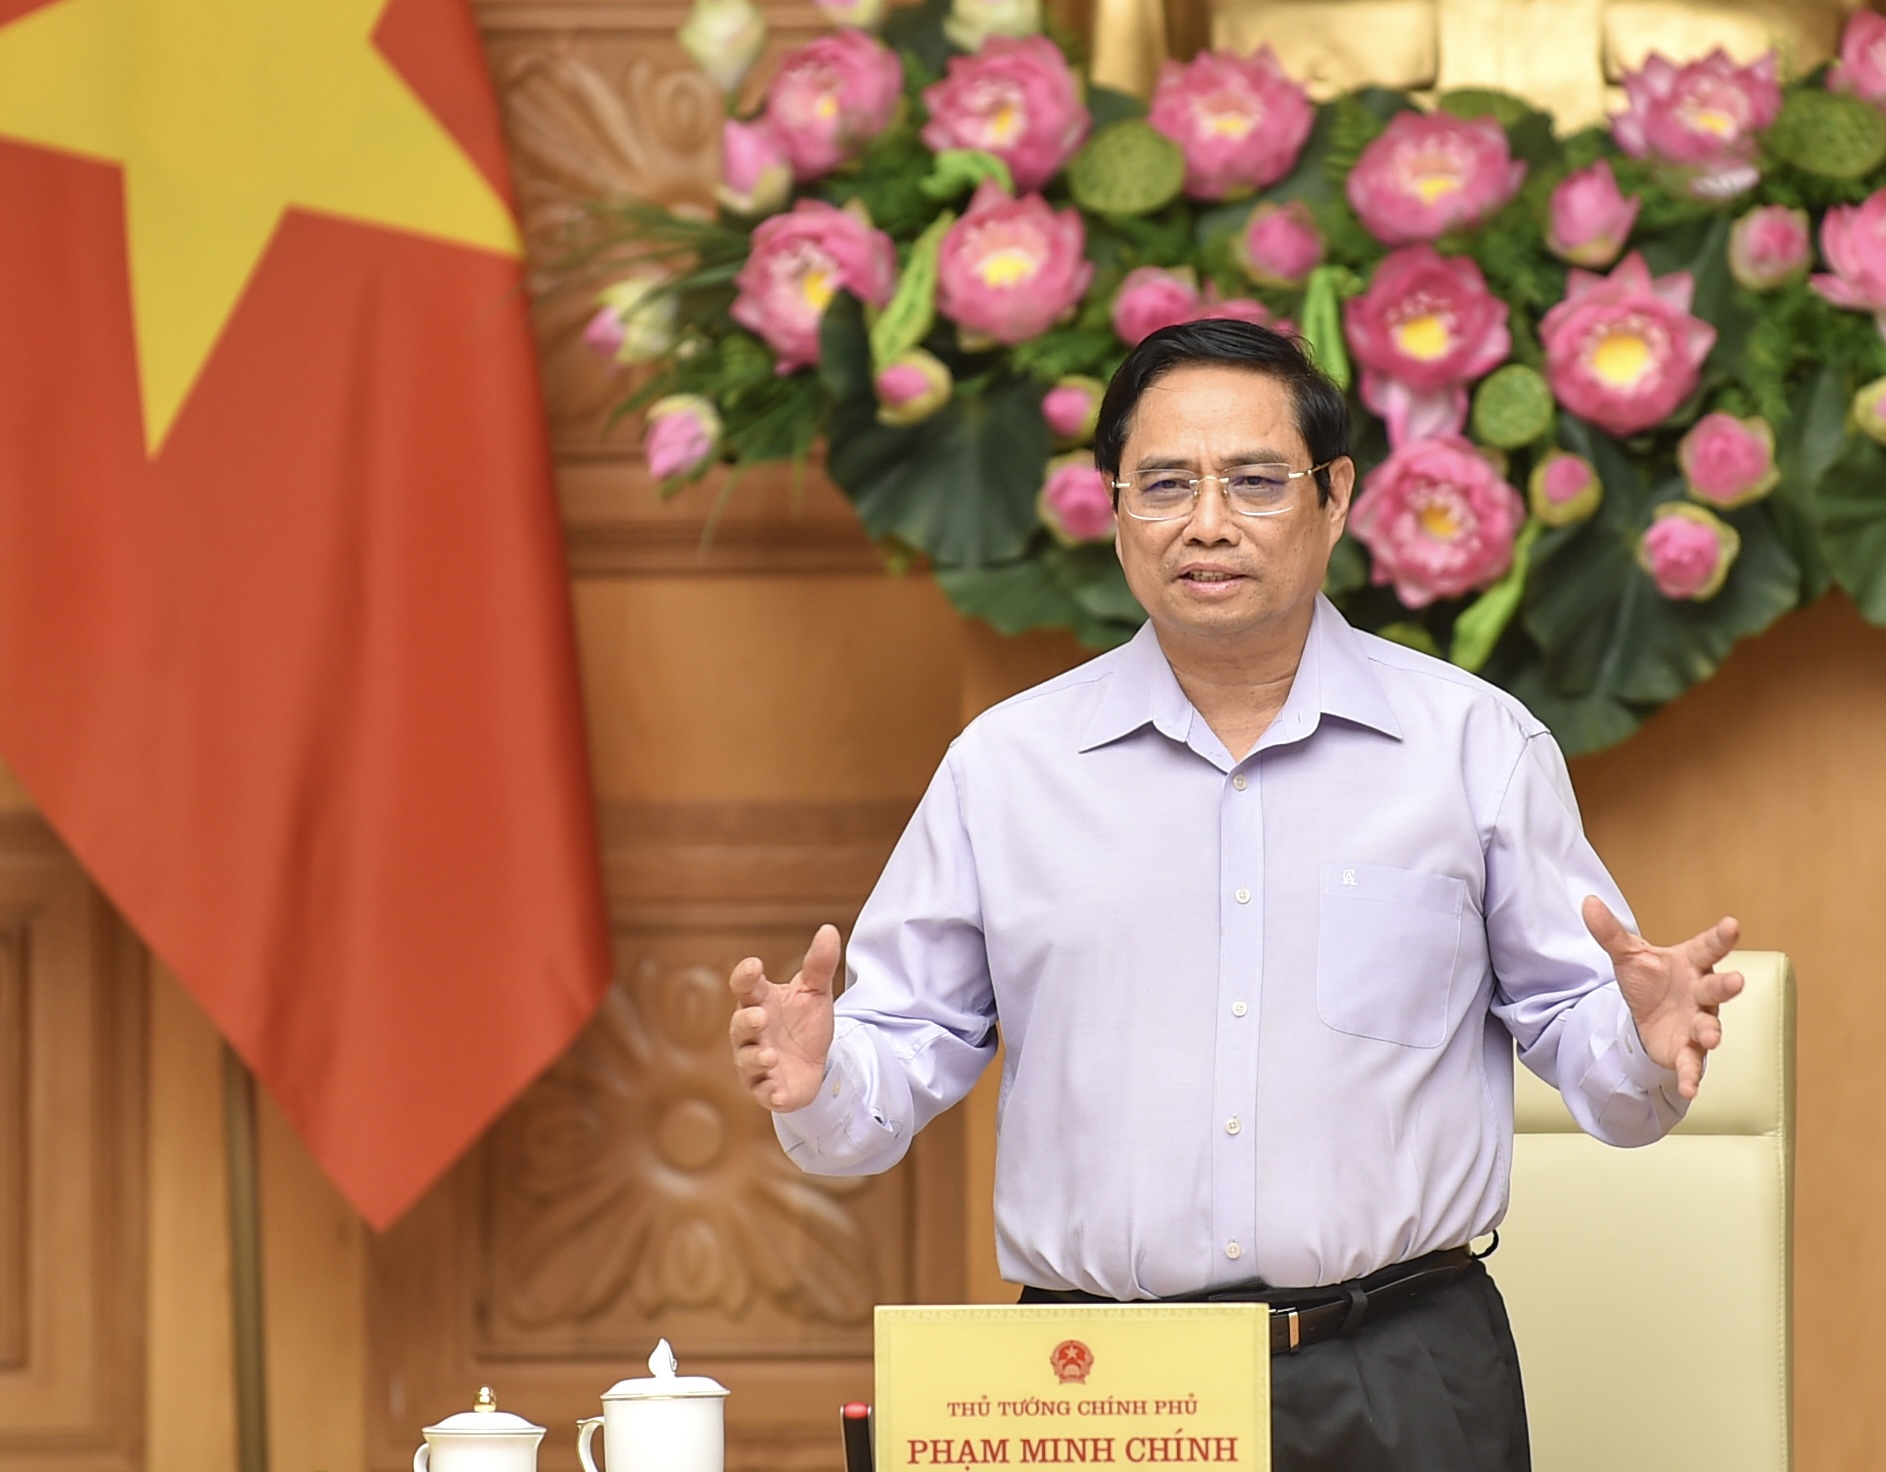 Thủ tướng nêu rõ, Chính phủ Việt Nam luôn sẵn sàng tạo điều kiện và đồng hành để các doanh nghiệp nước ngoài, trong đó có doanh nghiệp Hàn Quốc đầu tư, kinh doanh thuận lợi.